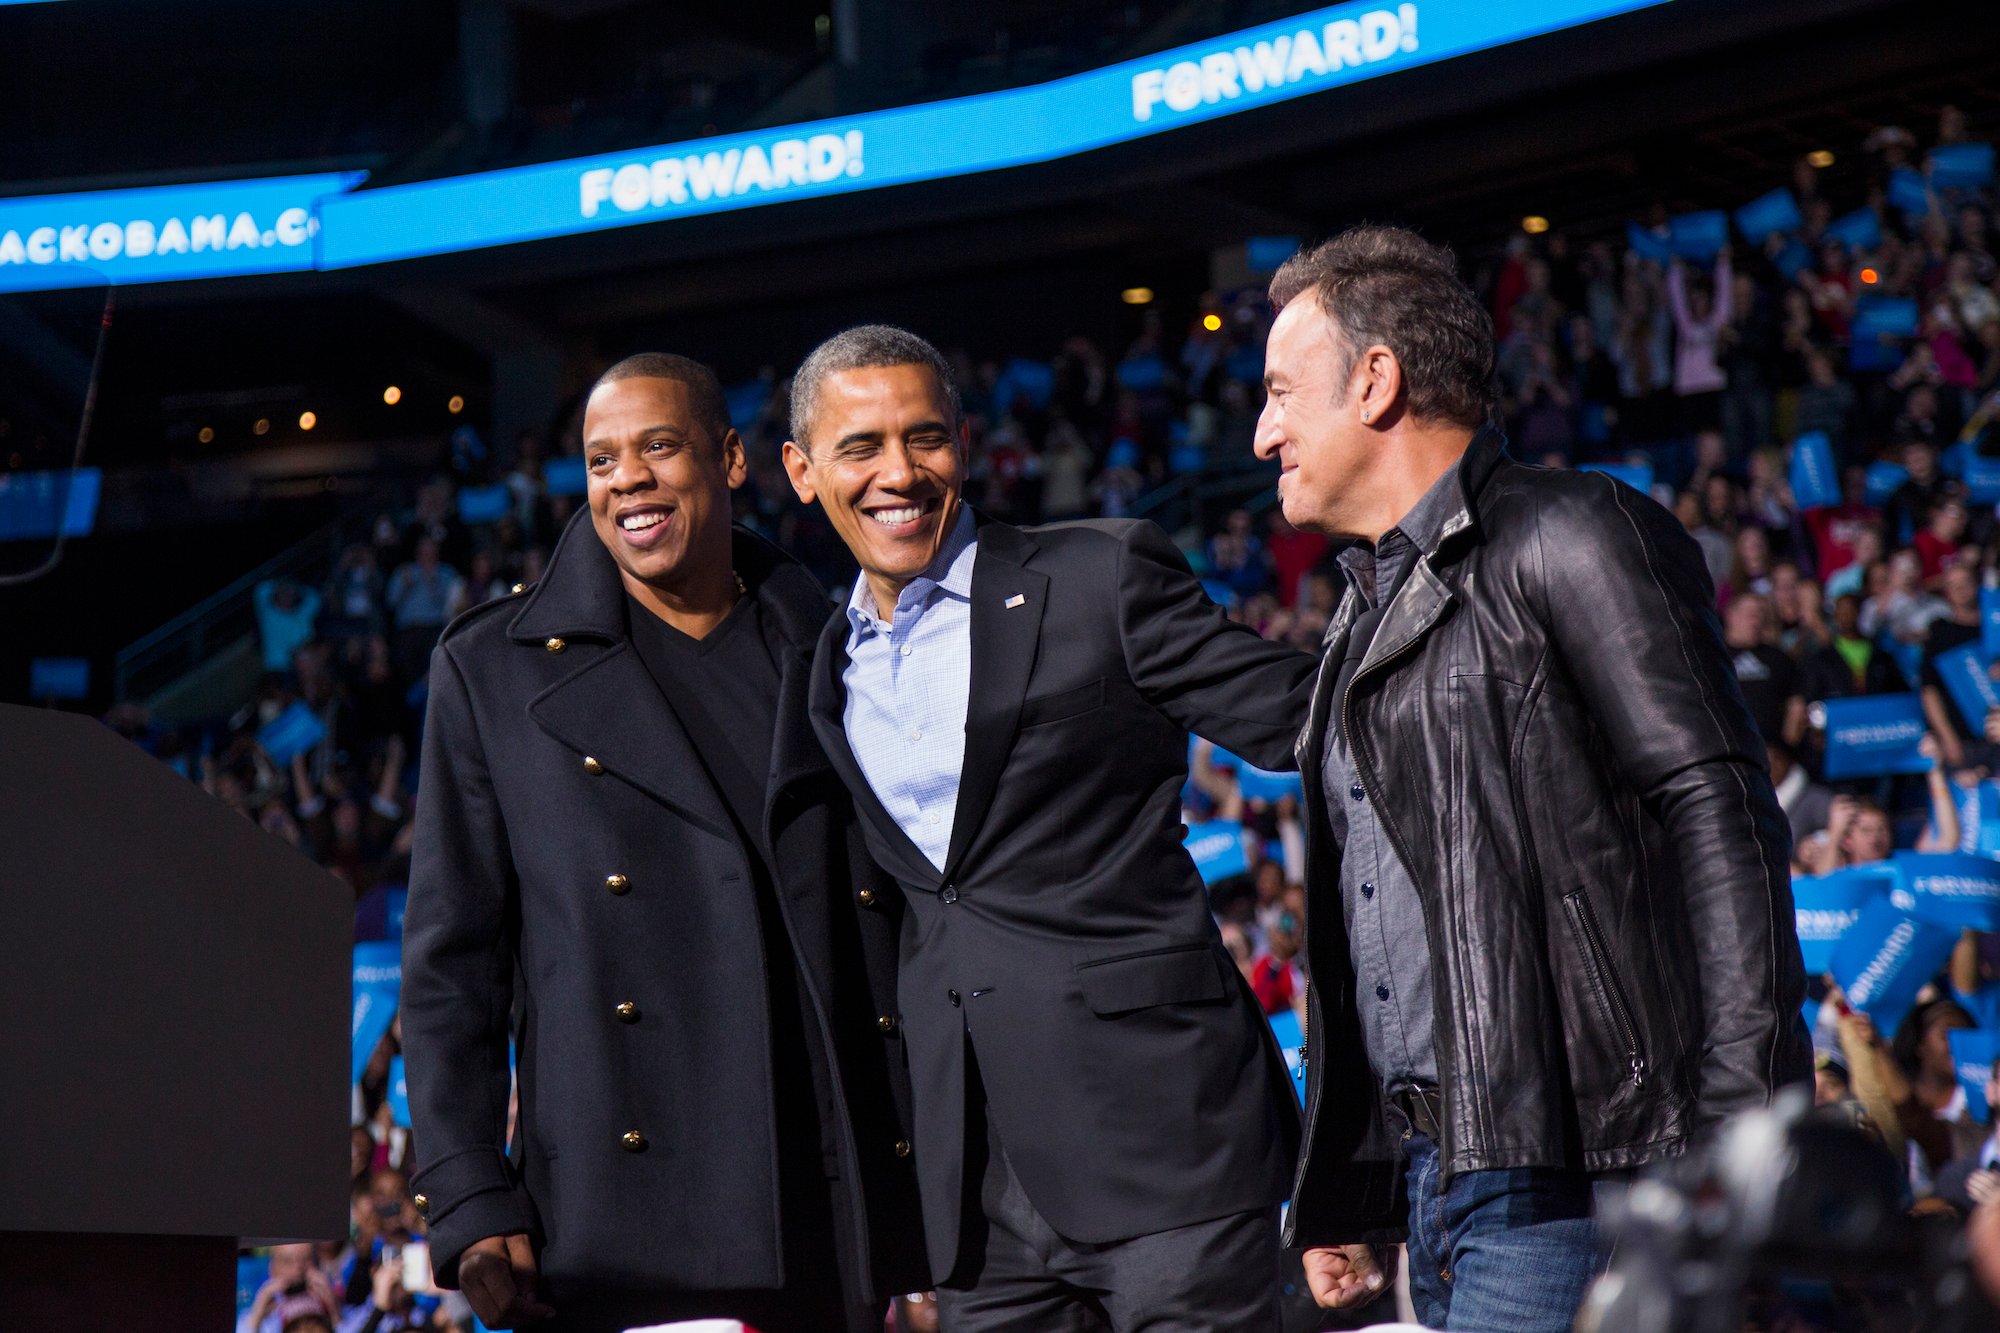 Jay-Z and Barack Obama